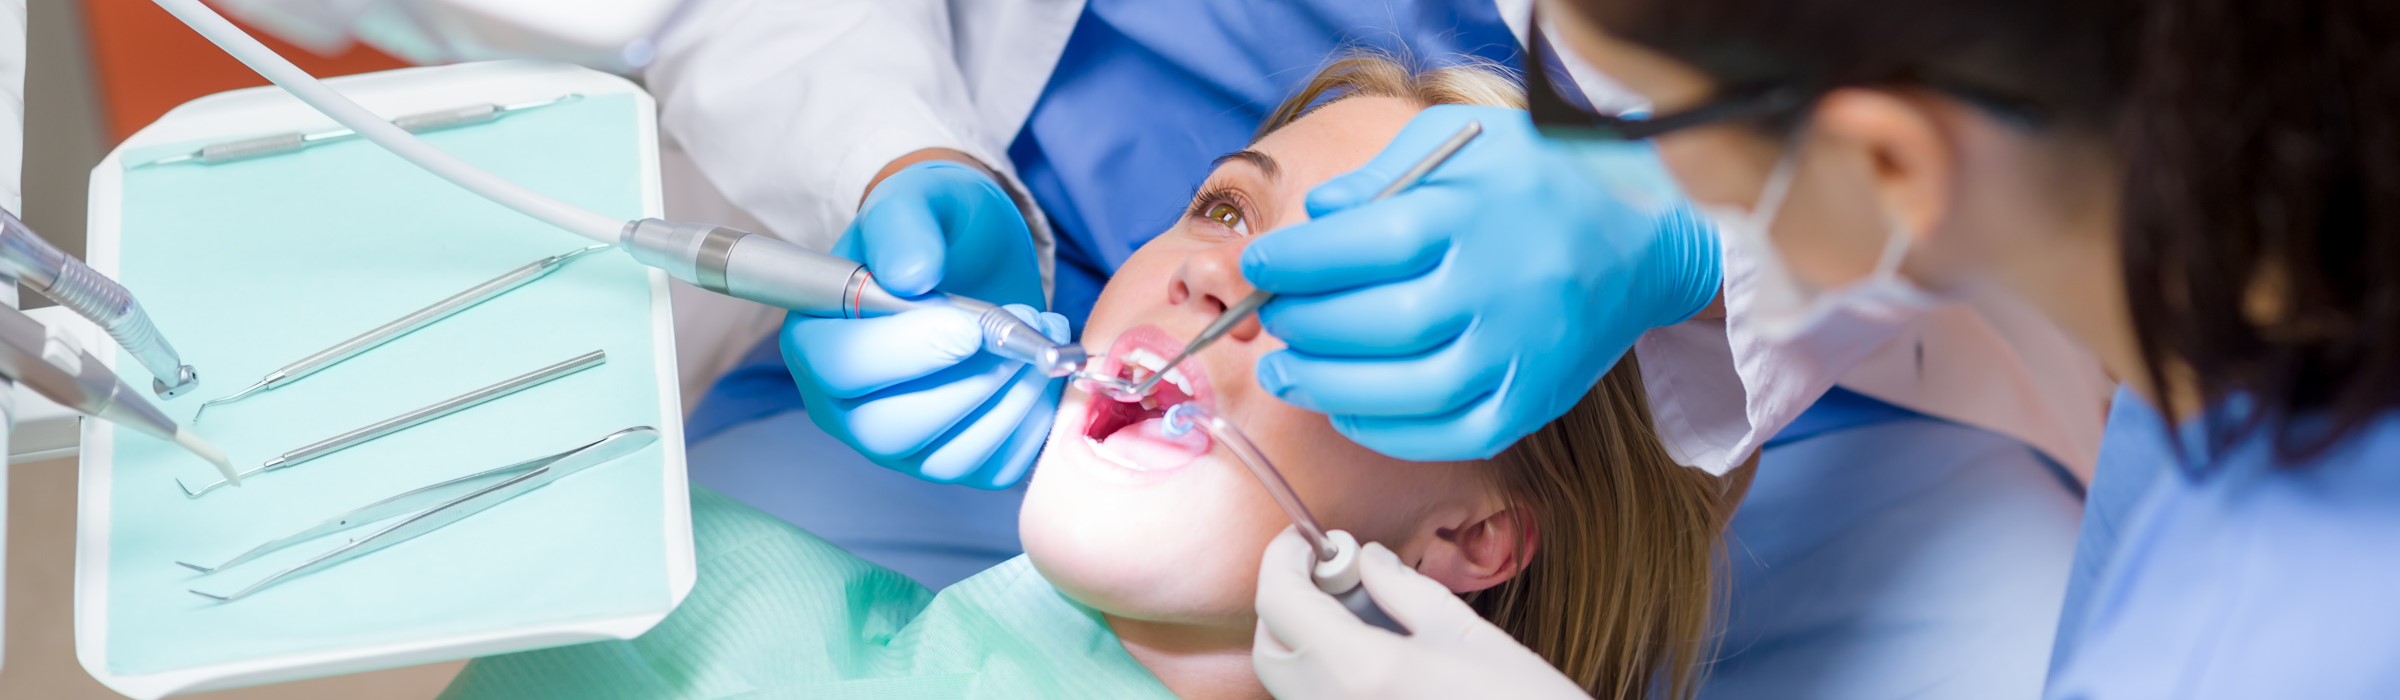 Zystenentfernung: Zysten in Mund und Kiefer ambulant behandeln